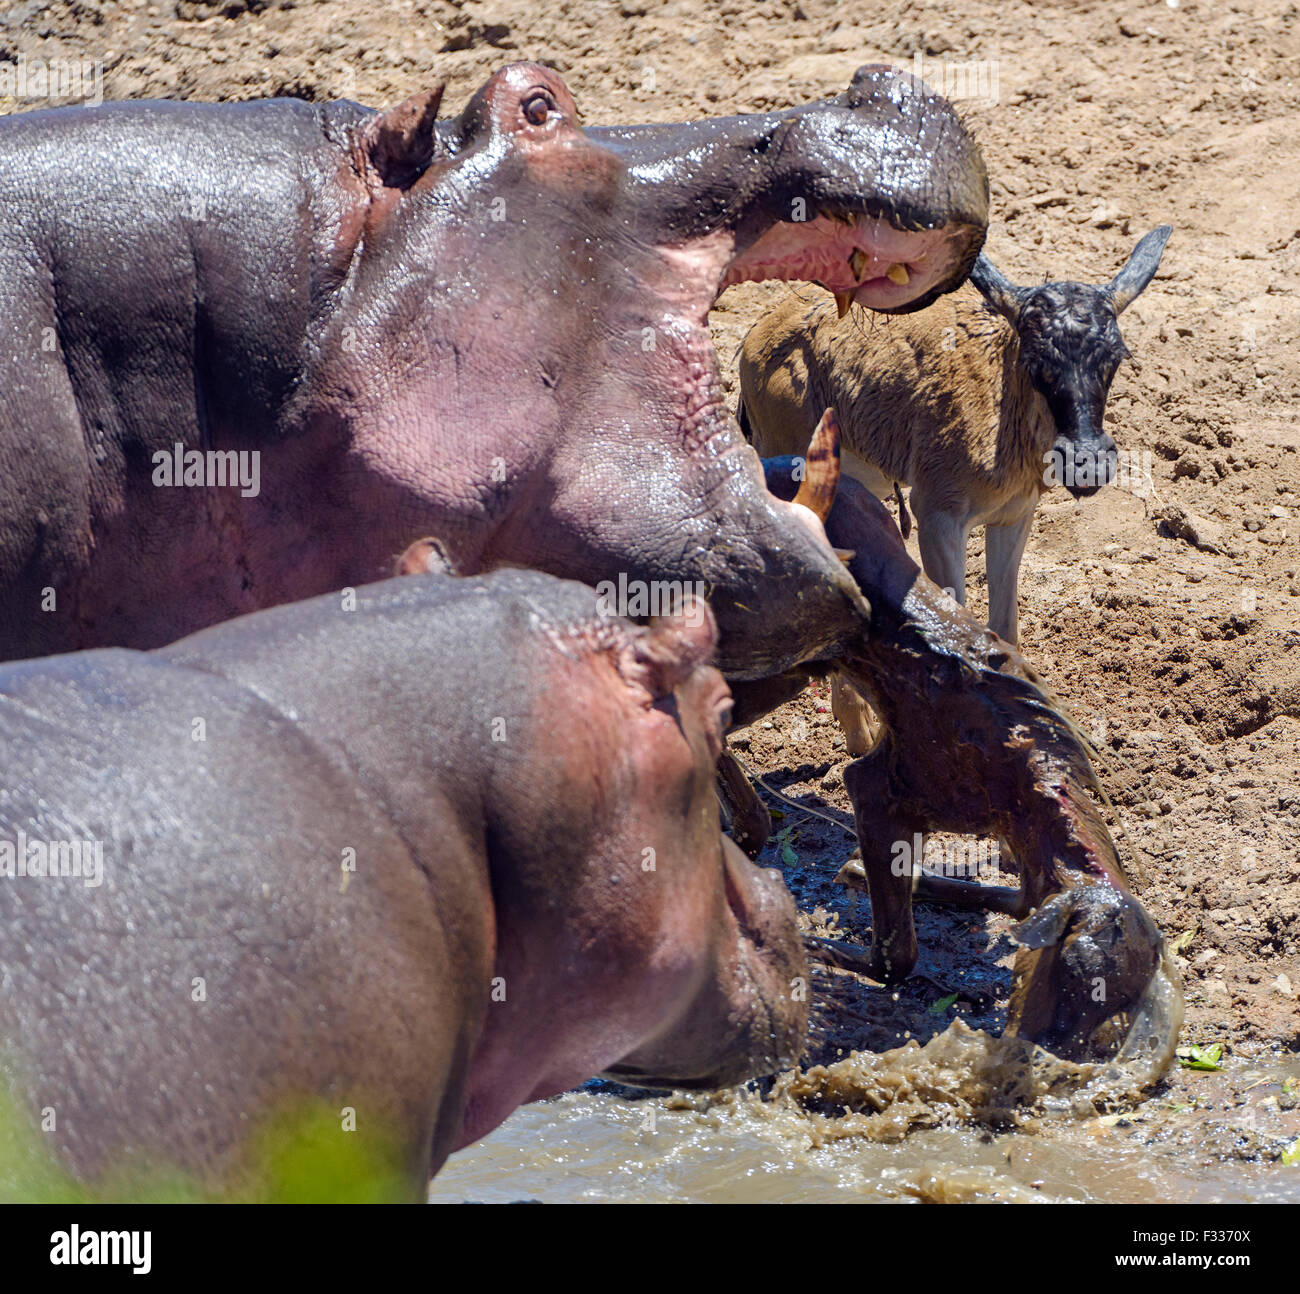 Hippopotame (Hippopotamus amphibious) chasser et tuer des gnous veau, comportement inhabituel, rareté, Maasai Mara National Reserve Banque D'Images